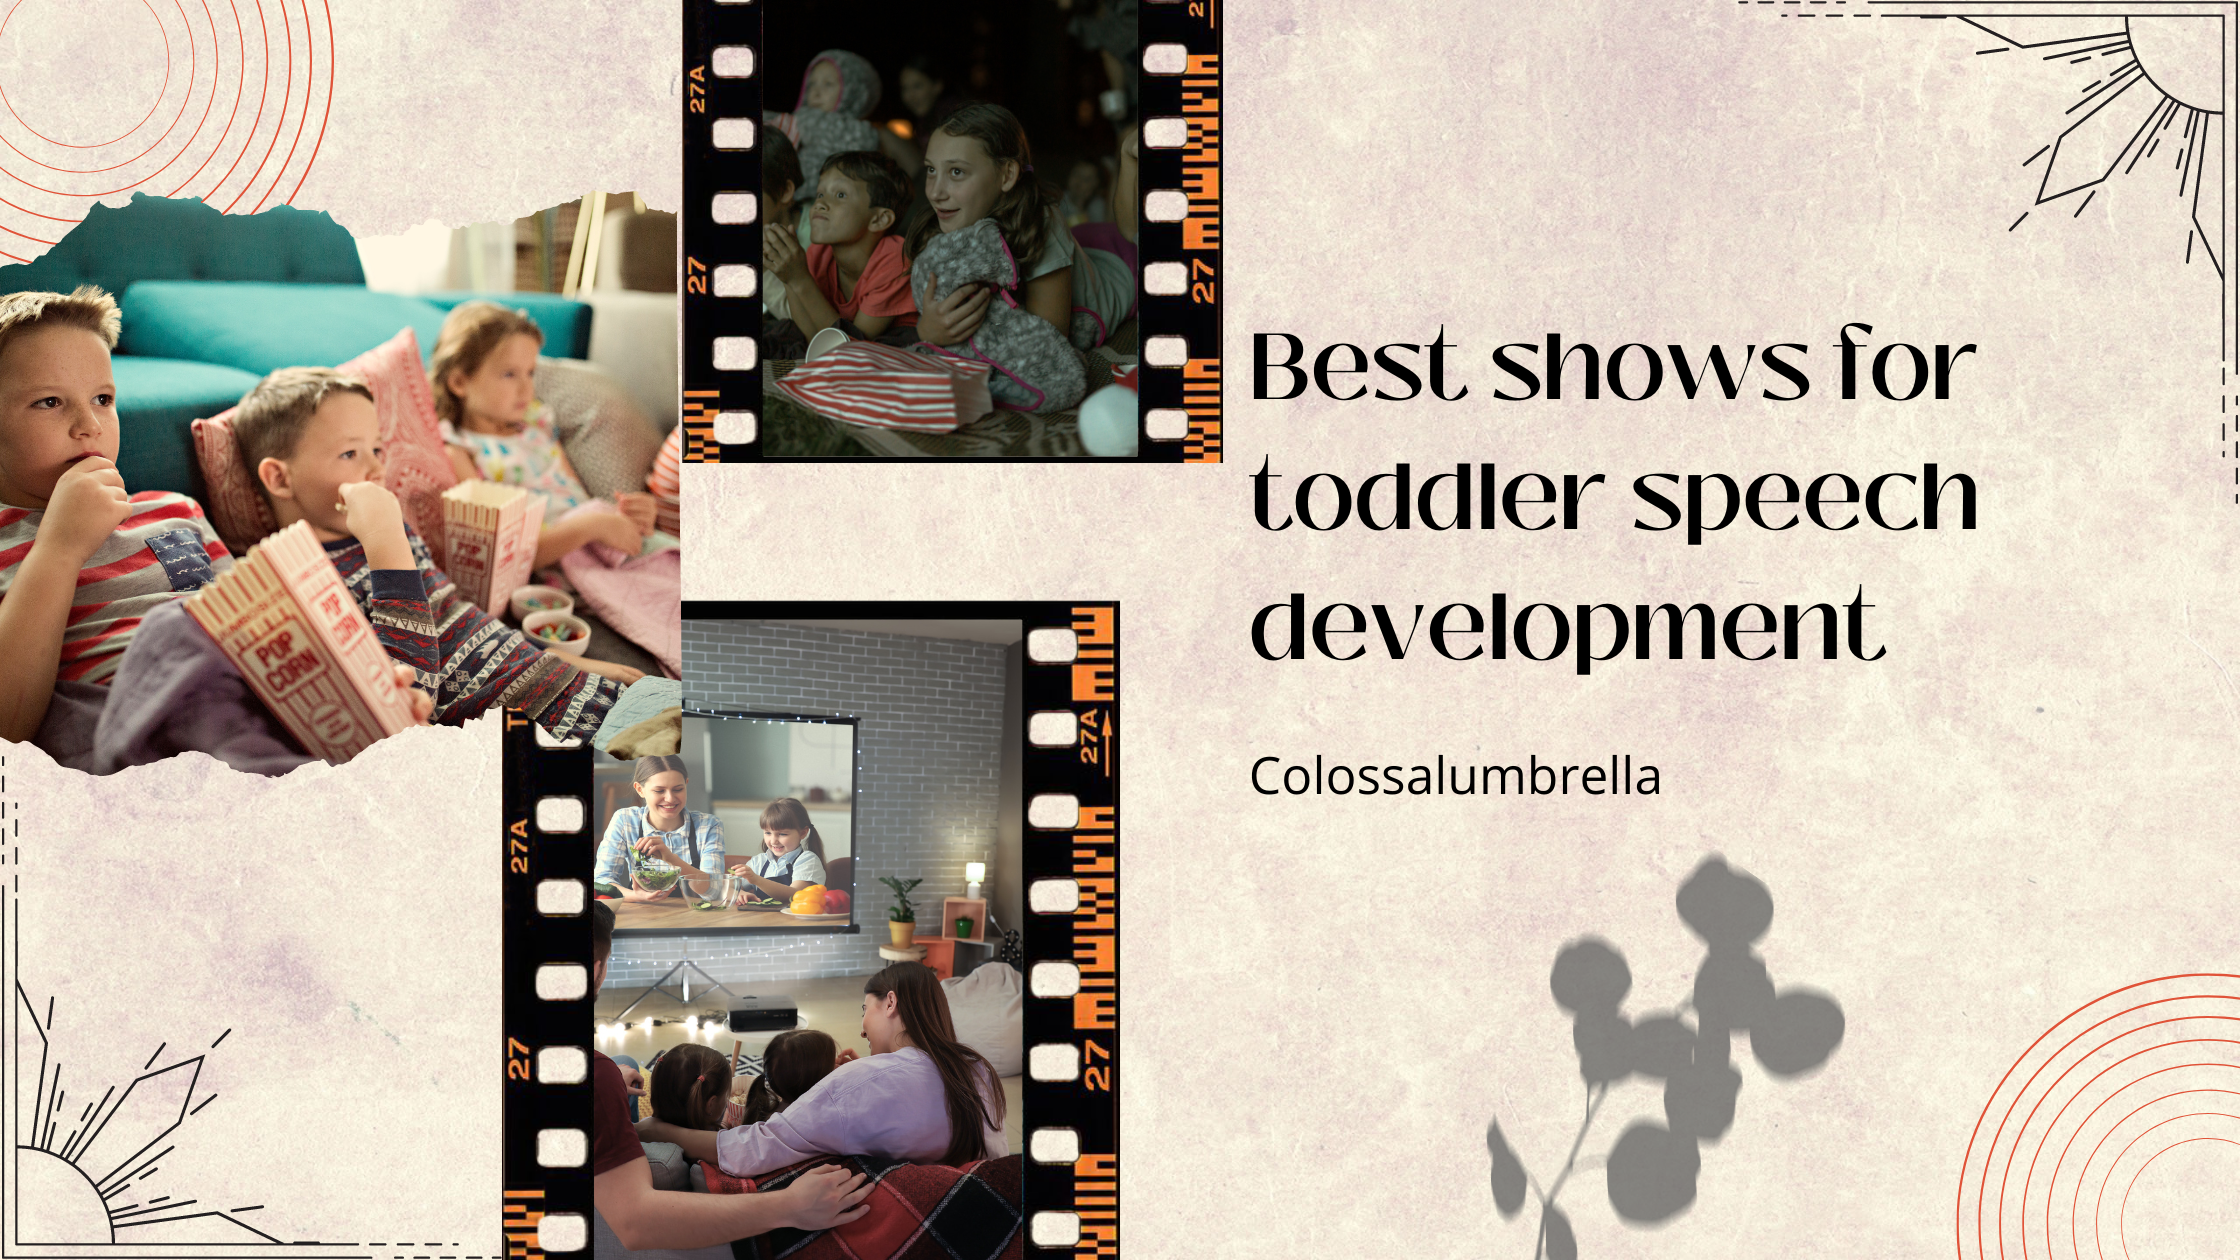 15 Best shows for toddler speech development